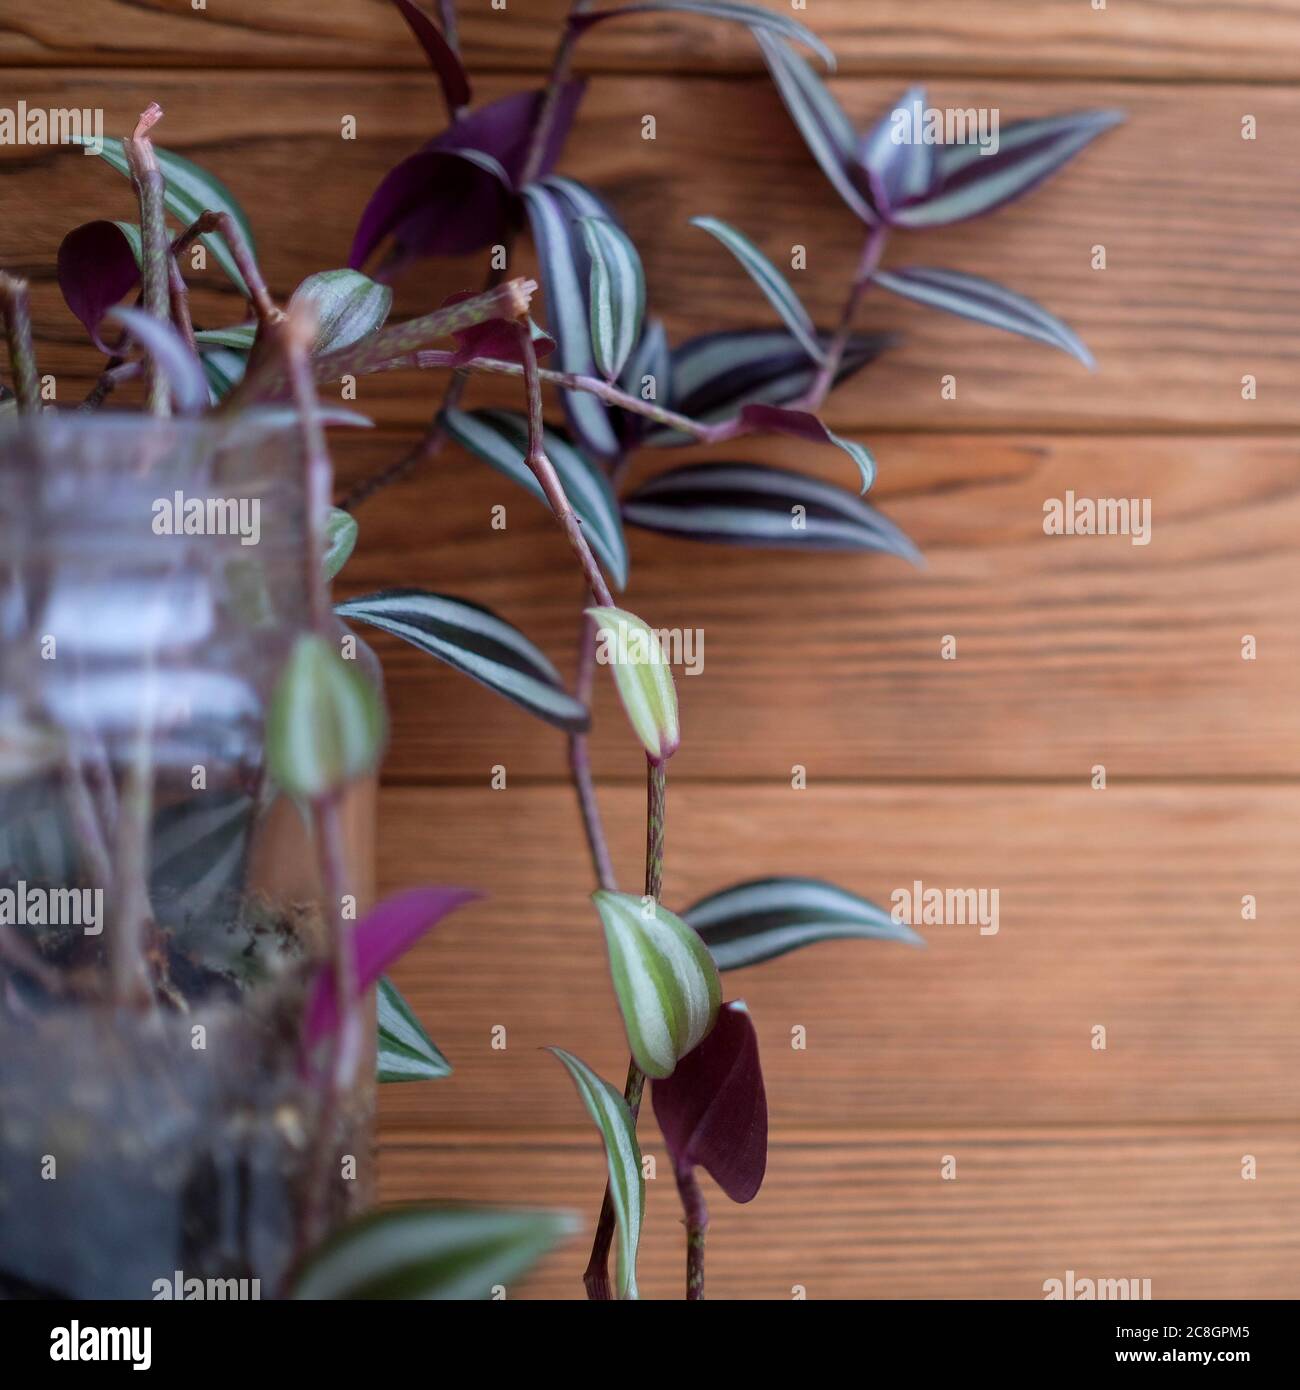 Die Messe zebrina wächst in einem Glas. Quadratisches Bild. Lila und grüne Blätter der Pflanze. Stockfoto